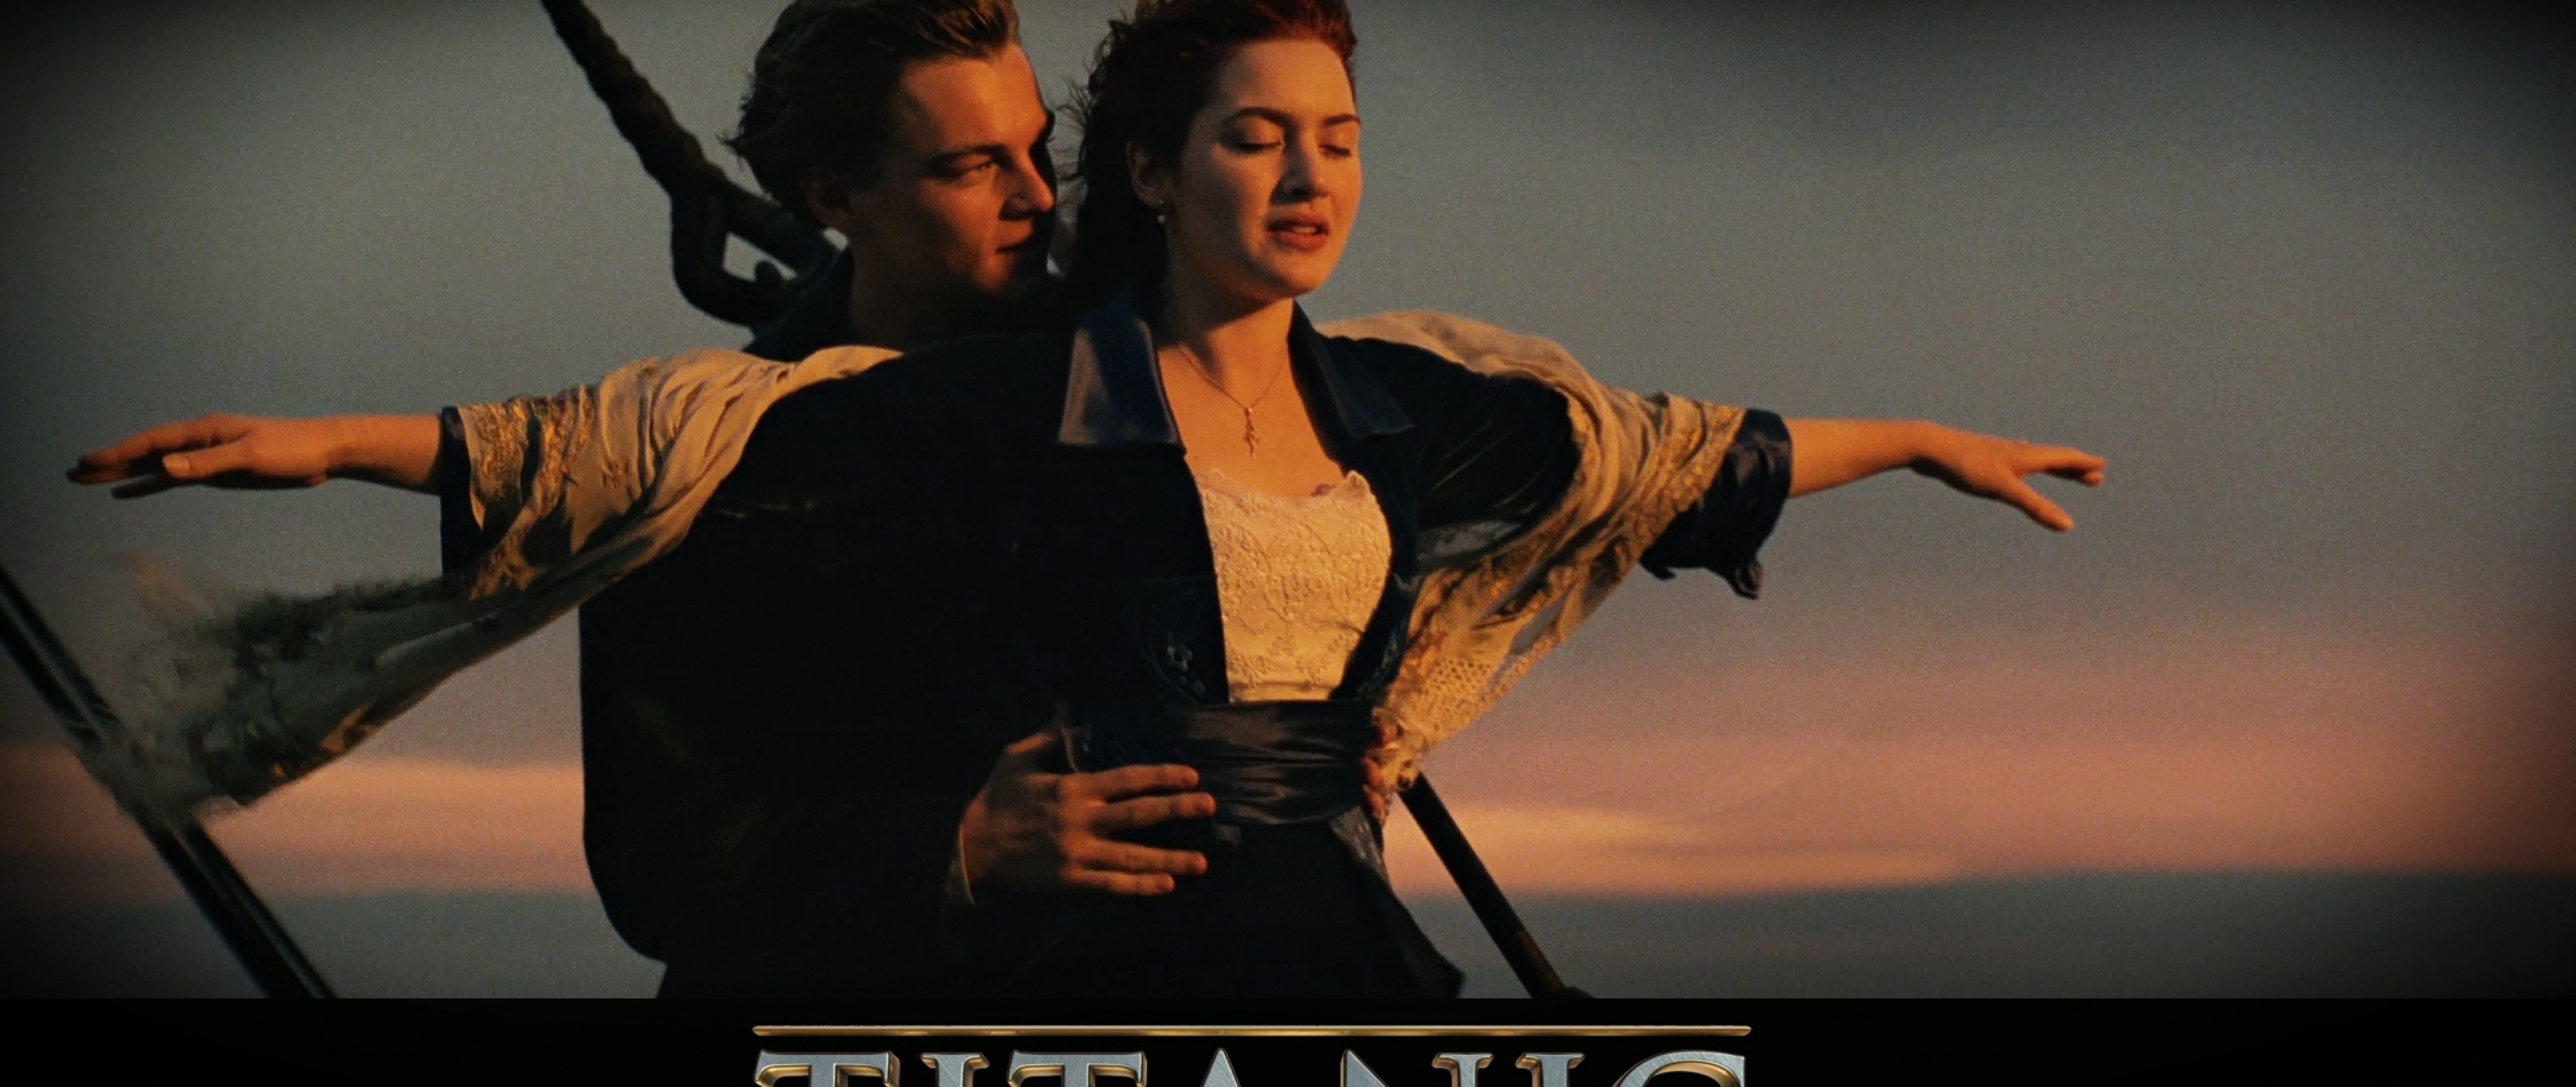 Titanic HD Wallpaper 4K Ultra HD Wide TV - HD Wallpaper 